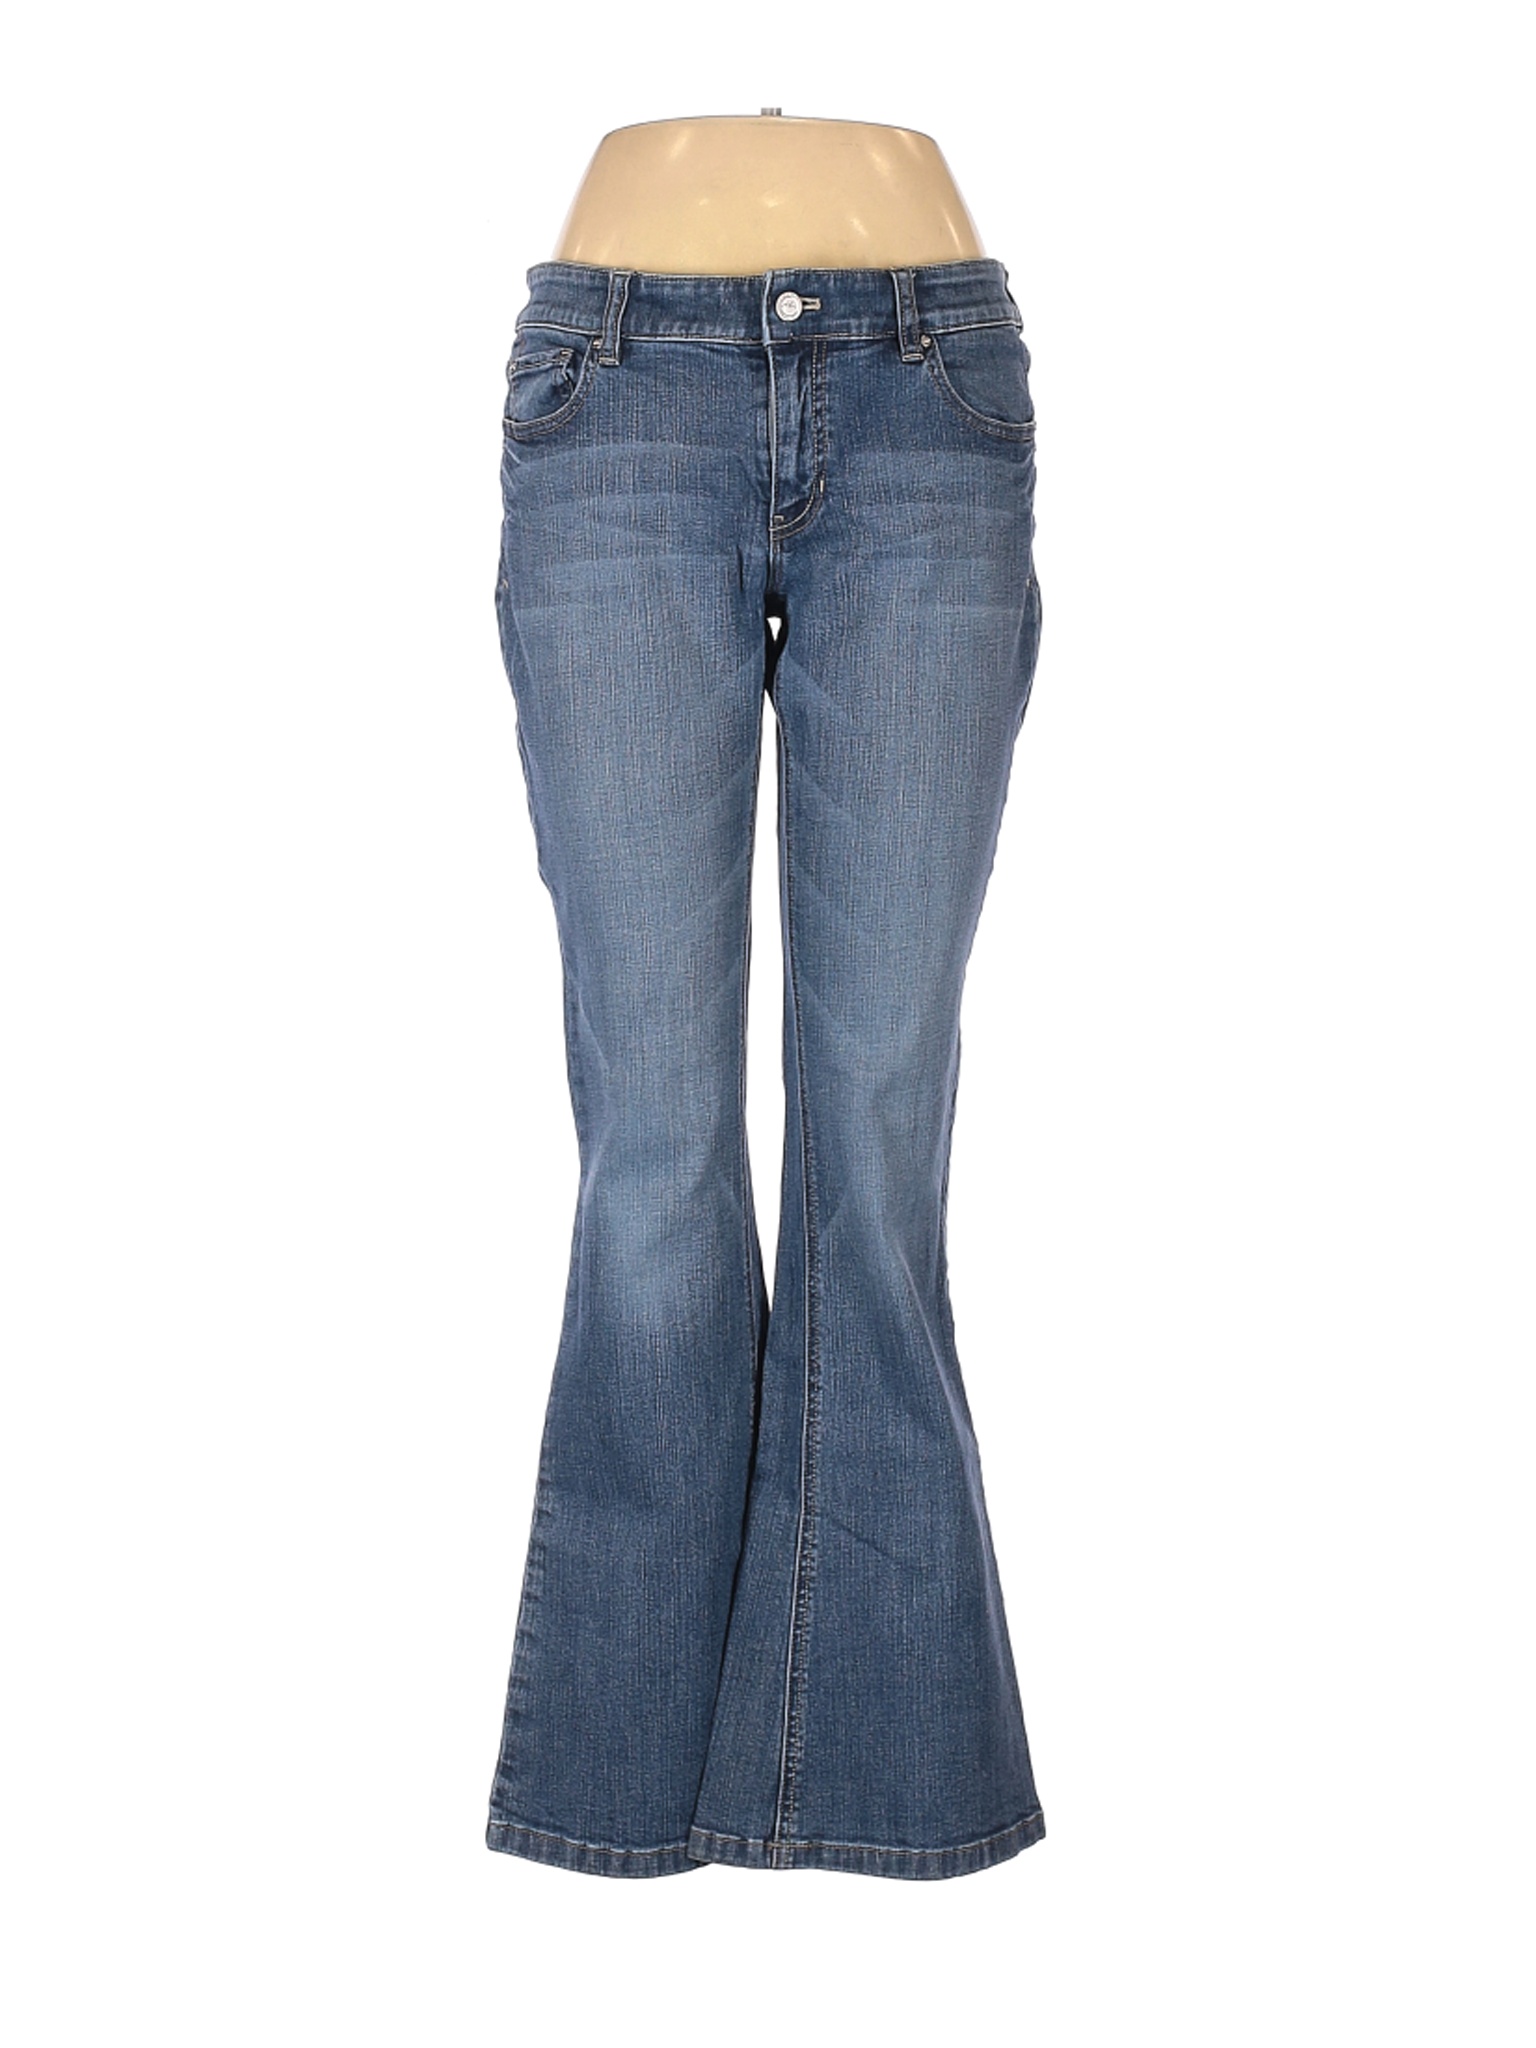 White House Black Market Women Blue Jeans 8 | eBay